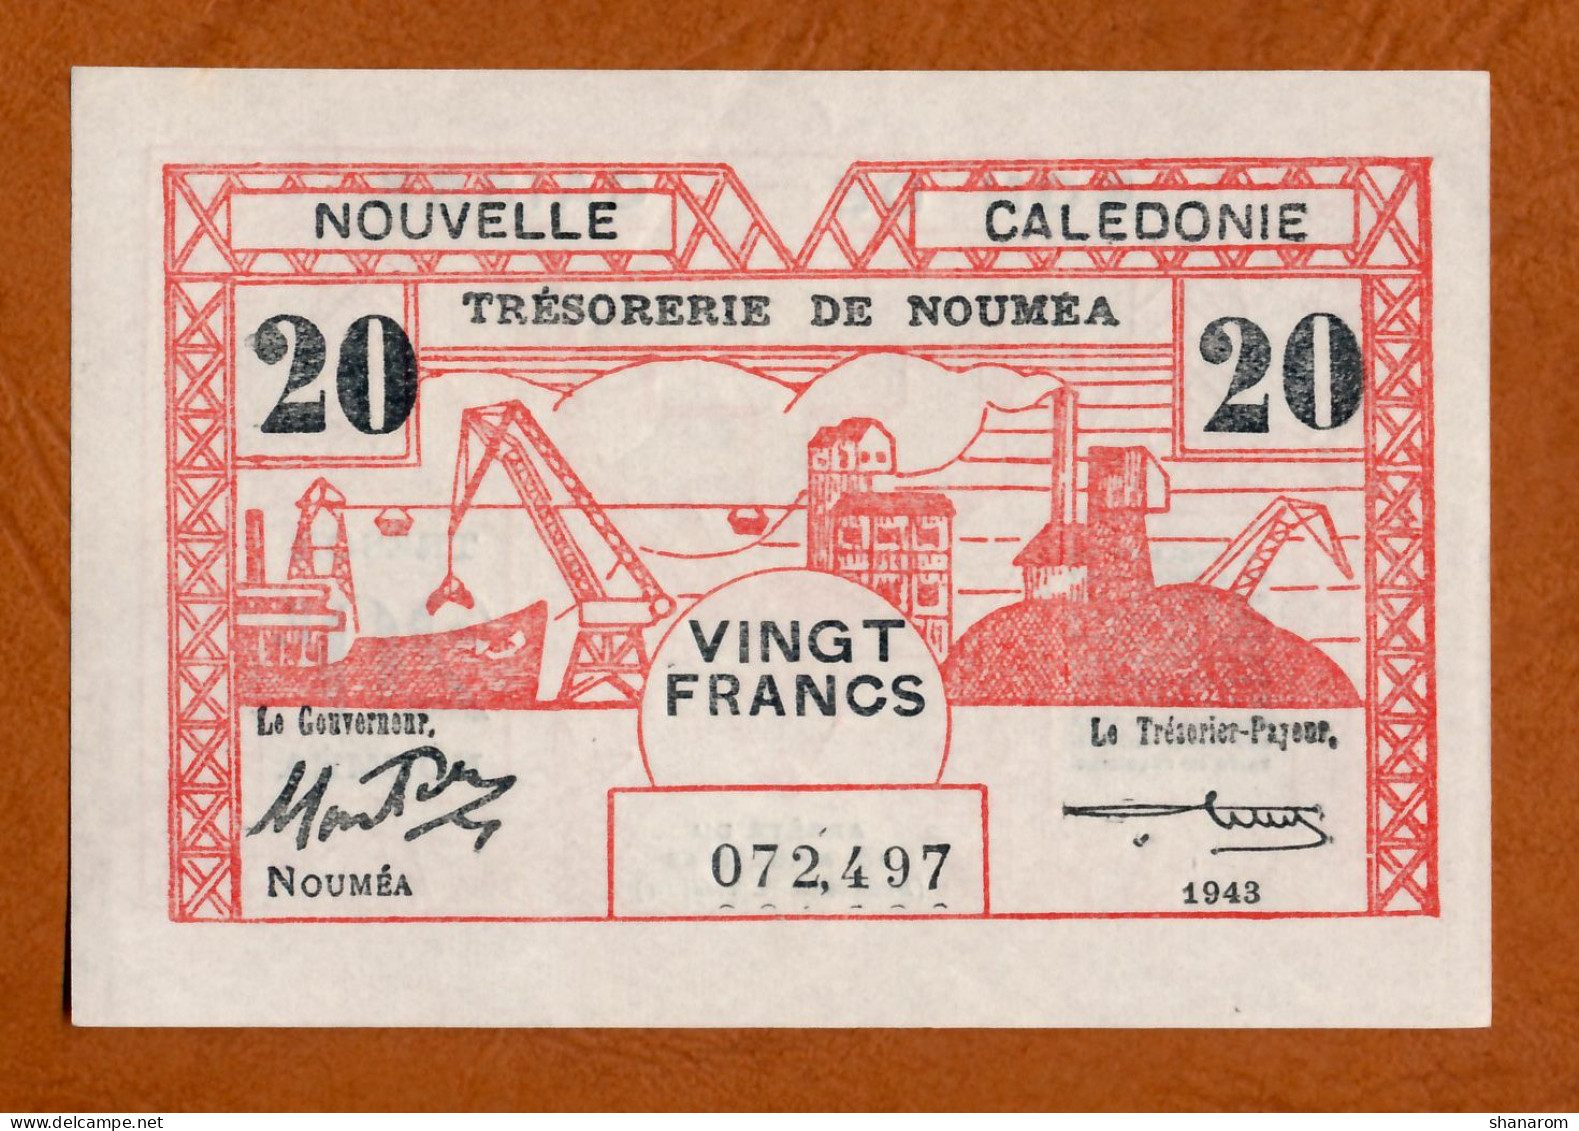 1943 // NOUVELLE CALEDONIE // TRESORERIE DE NOUMEA // Avril 1943 // Vingt Francs // XF+ / SUP+ - Nouméa (Neukaledonien 1873-1985)